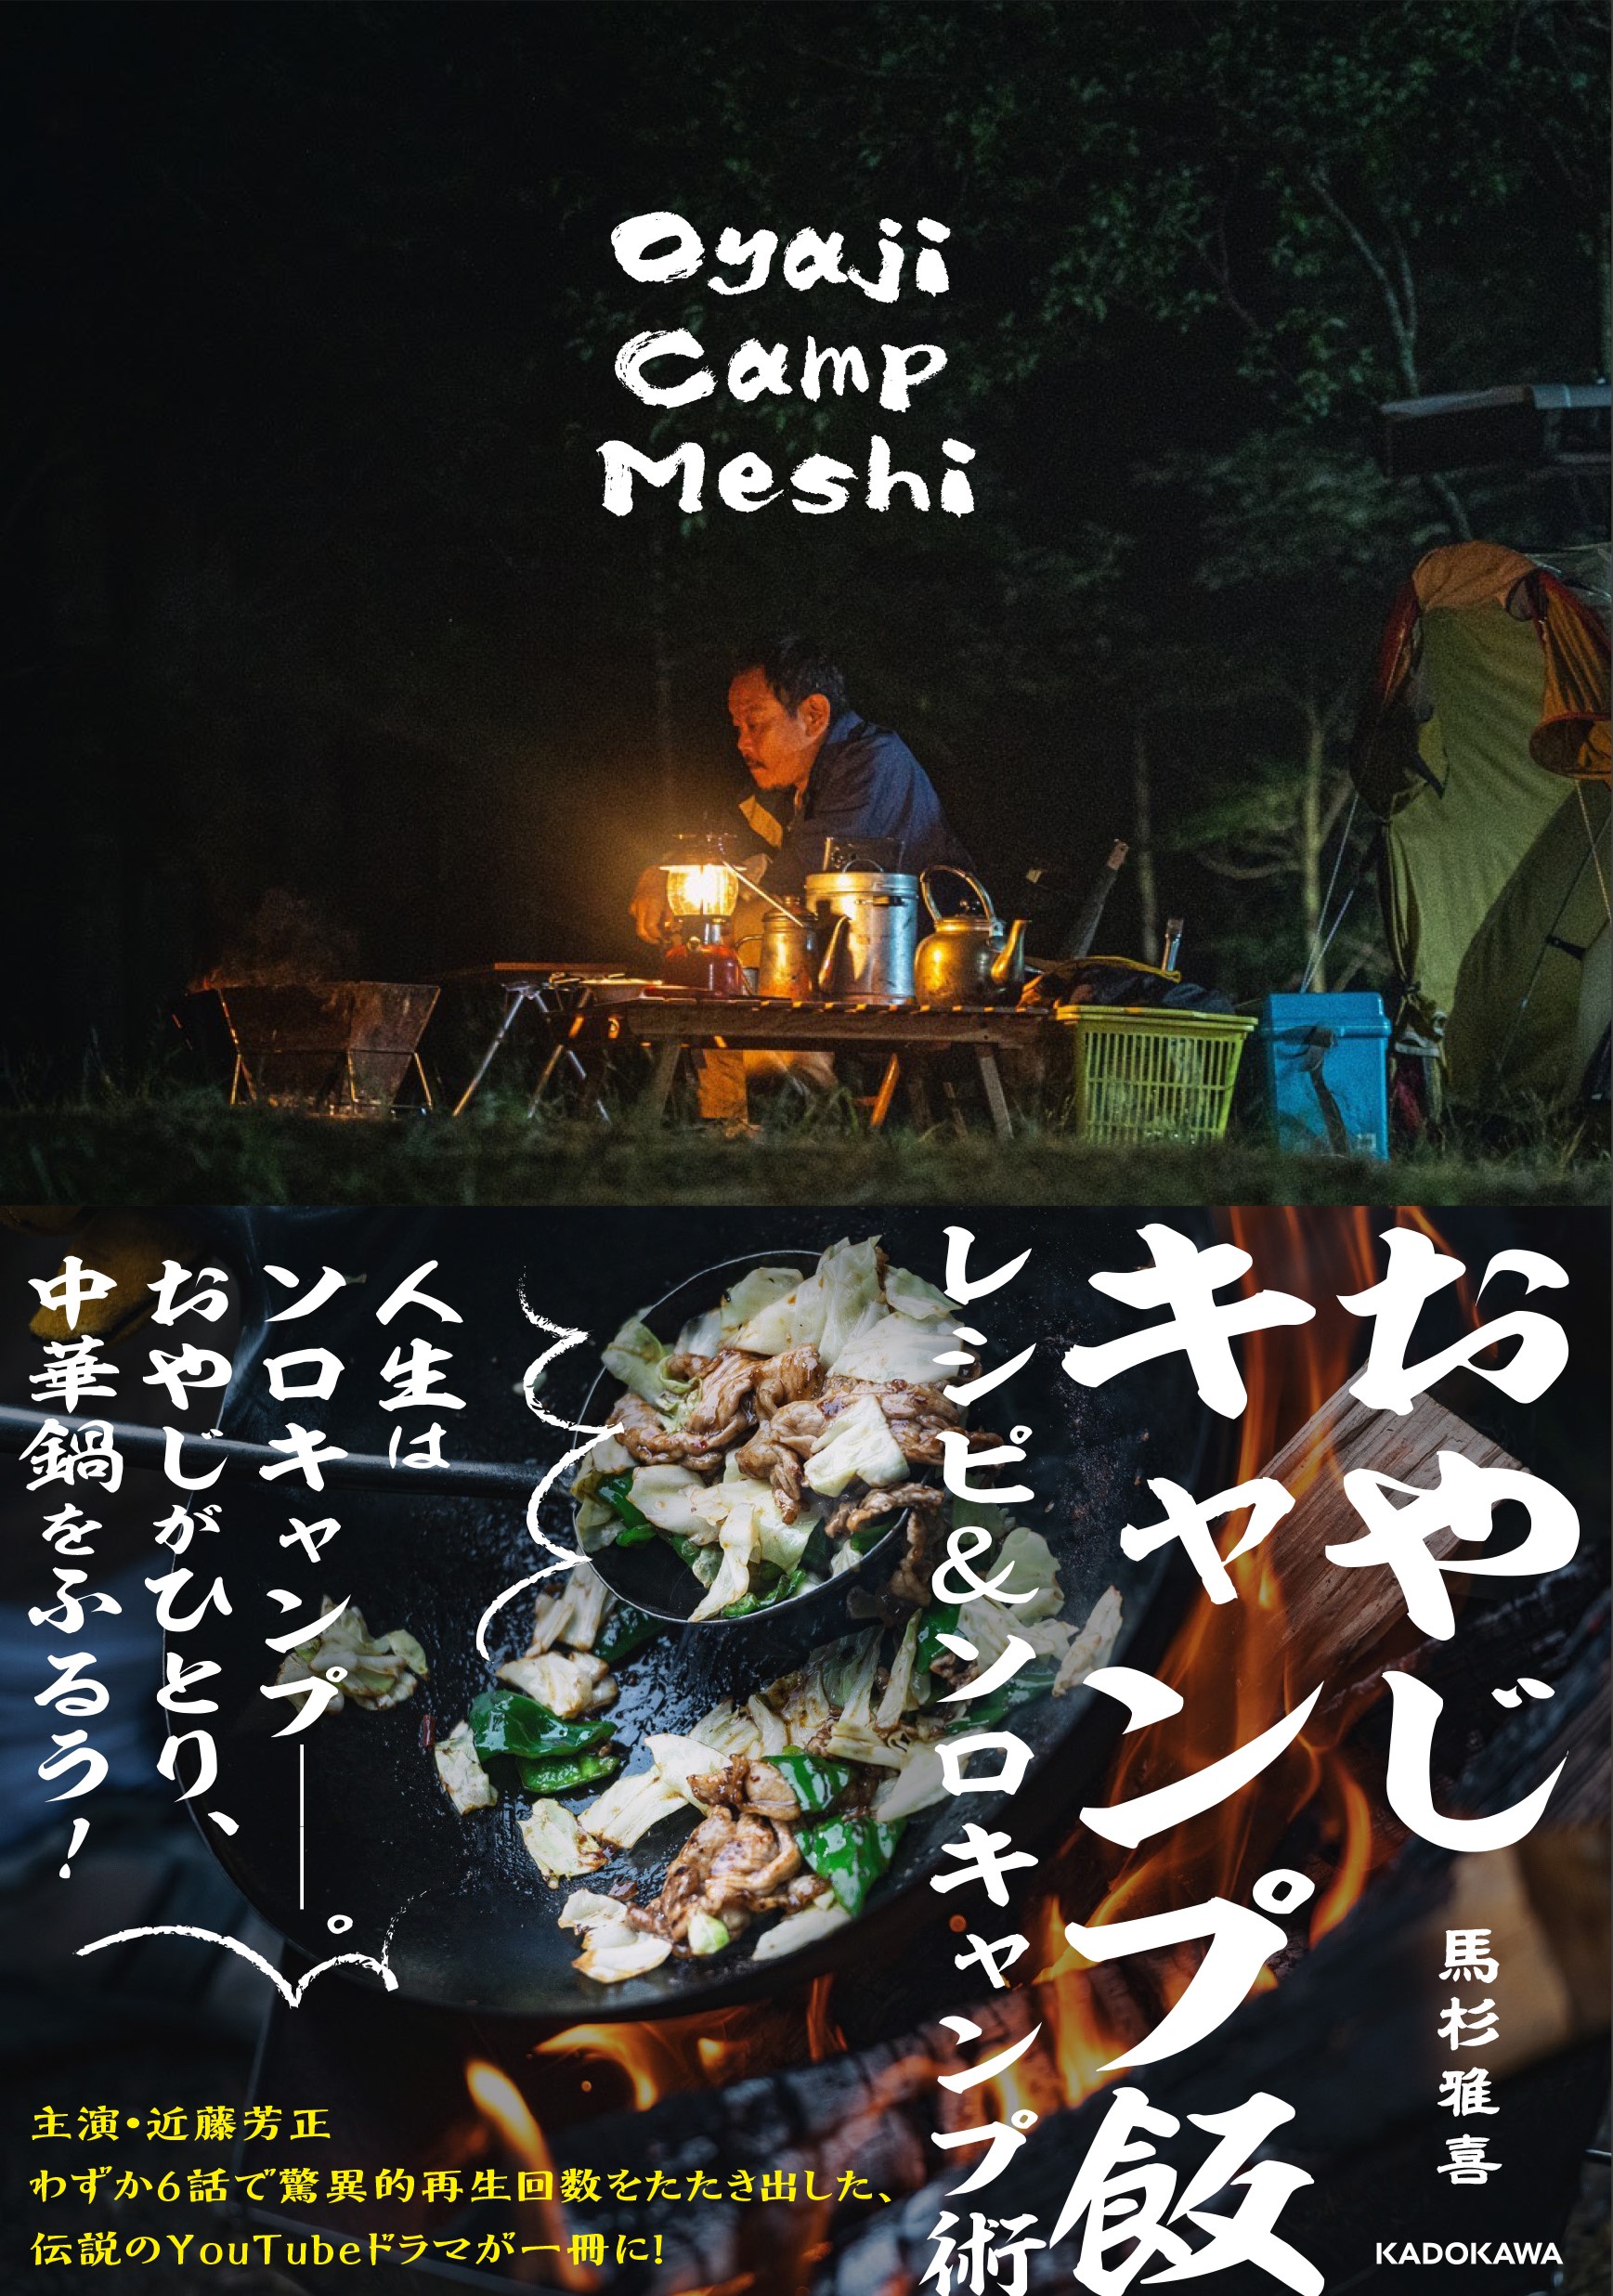 伝説のYouTubeドラマが一冊に！ 「おやじキャンプ飯 レシピ＆ソロキャンプ術」が6月10日(木)全国で発売開始。